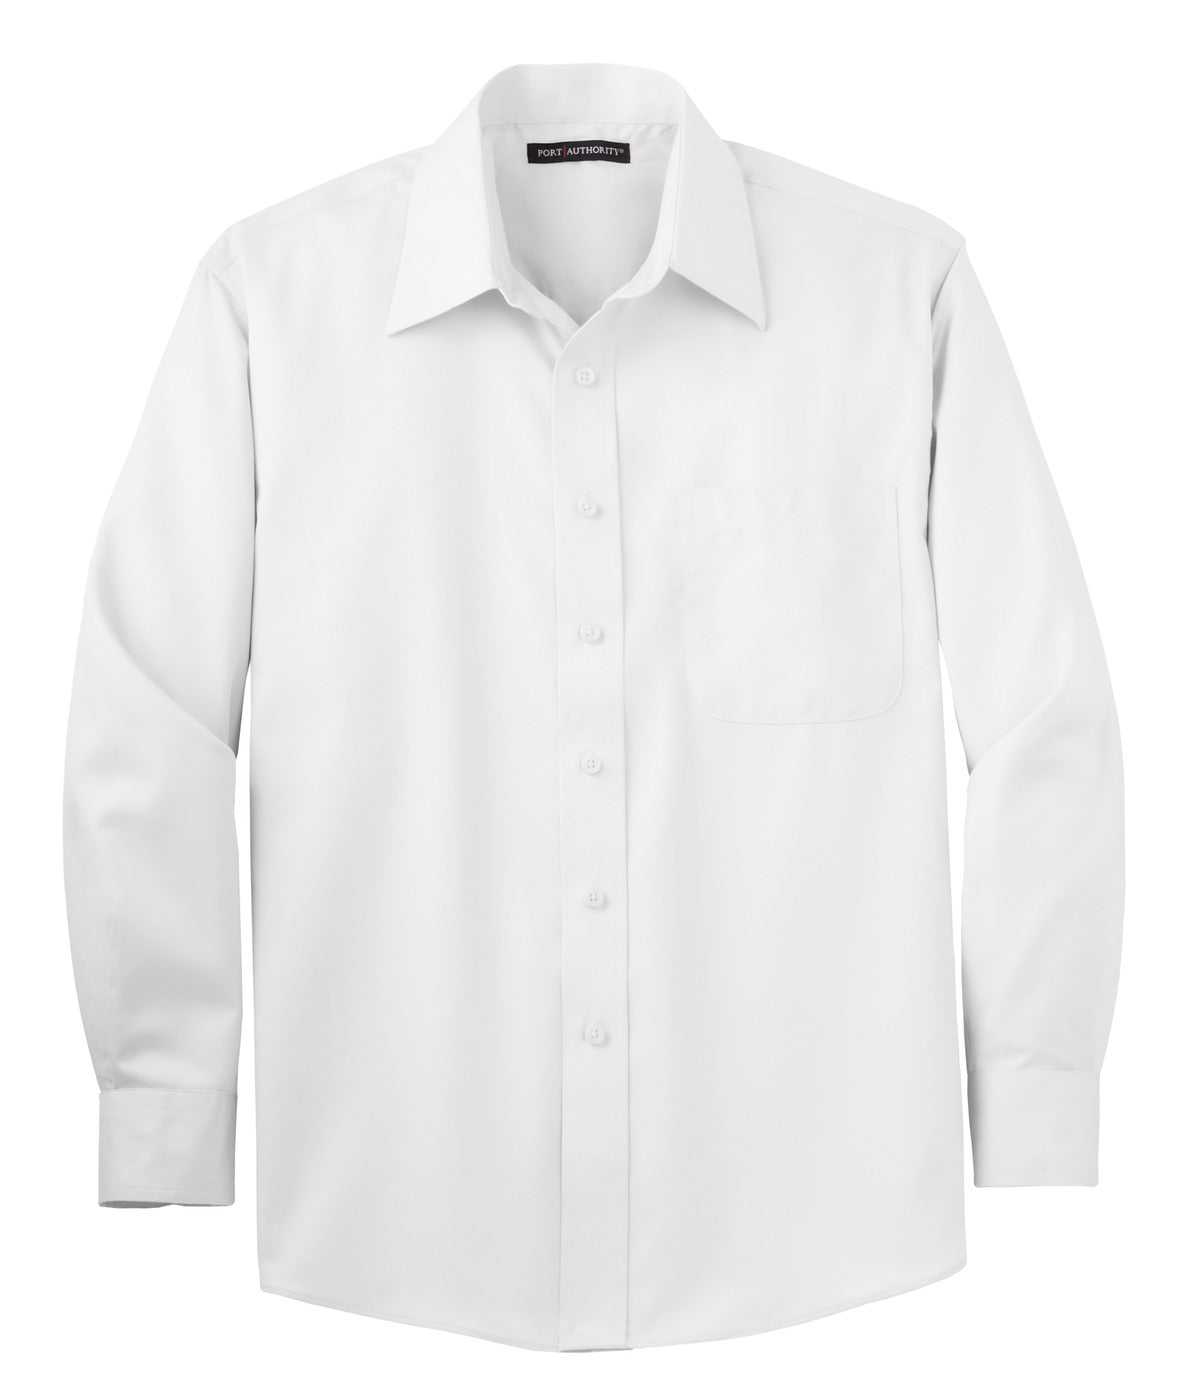 Port Authority S638 Non-Iron Twill Shirt - White - HIT a Double - 1